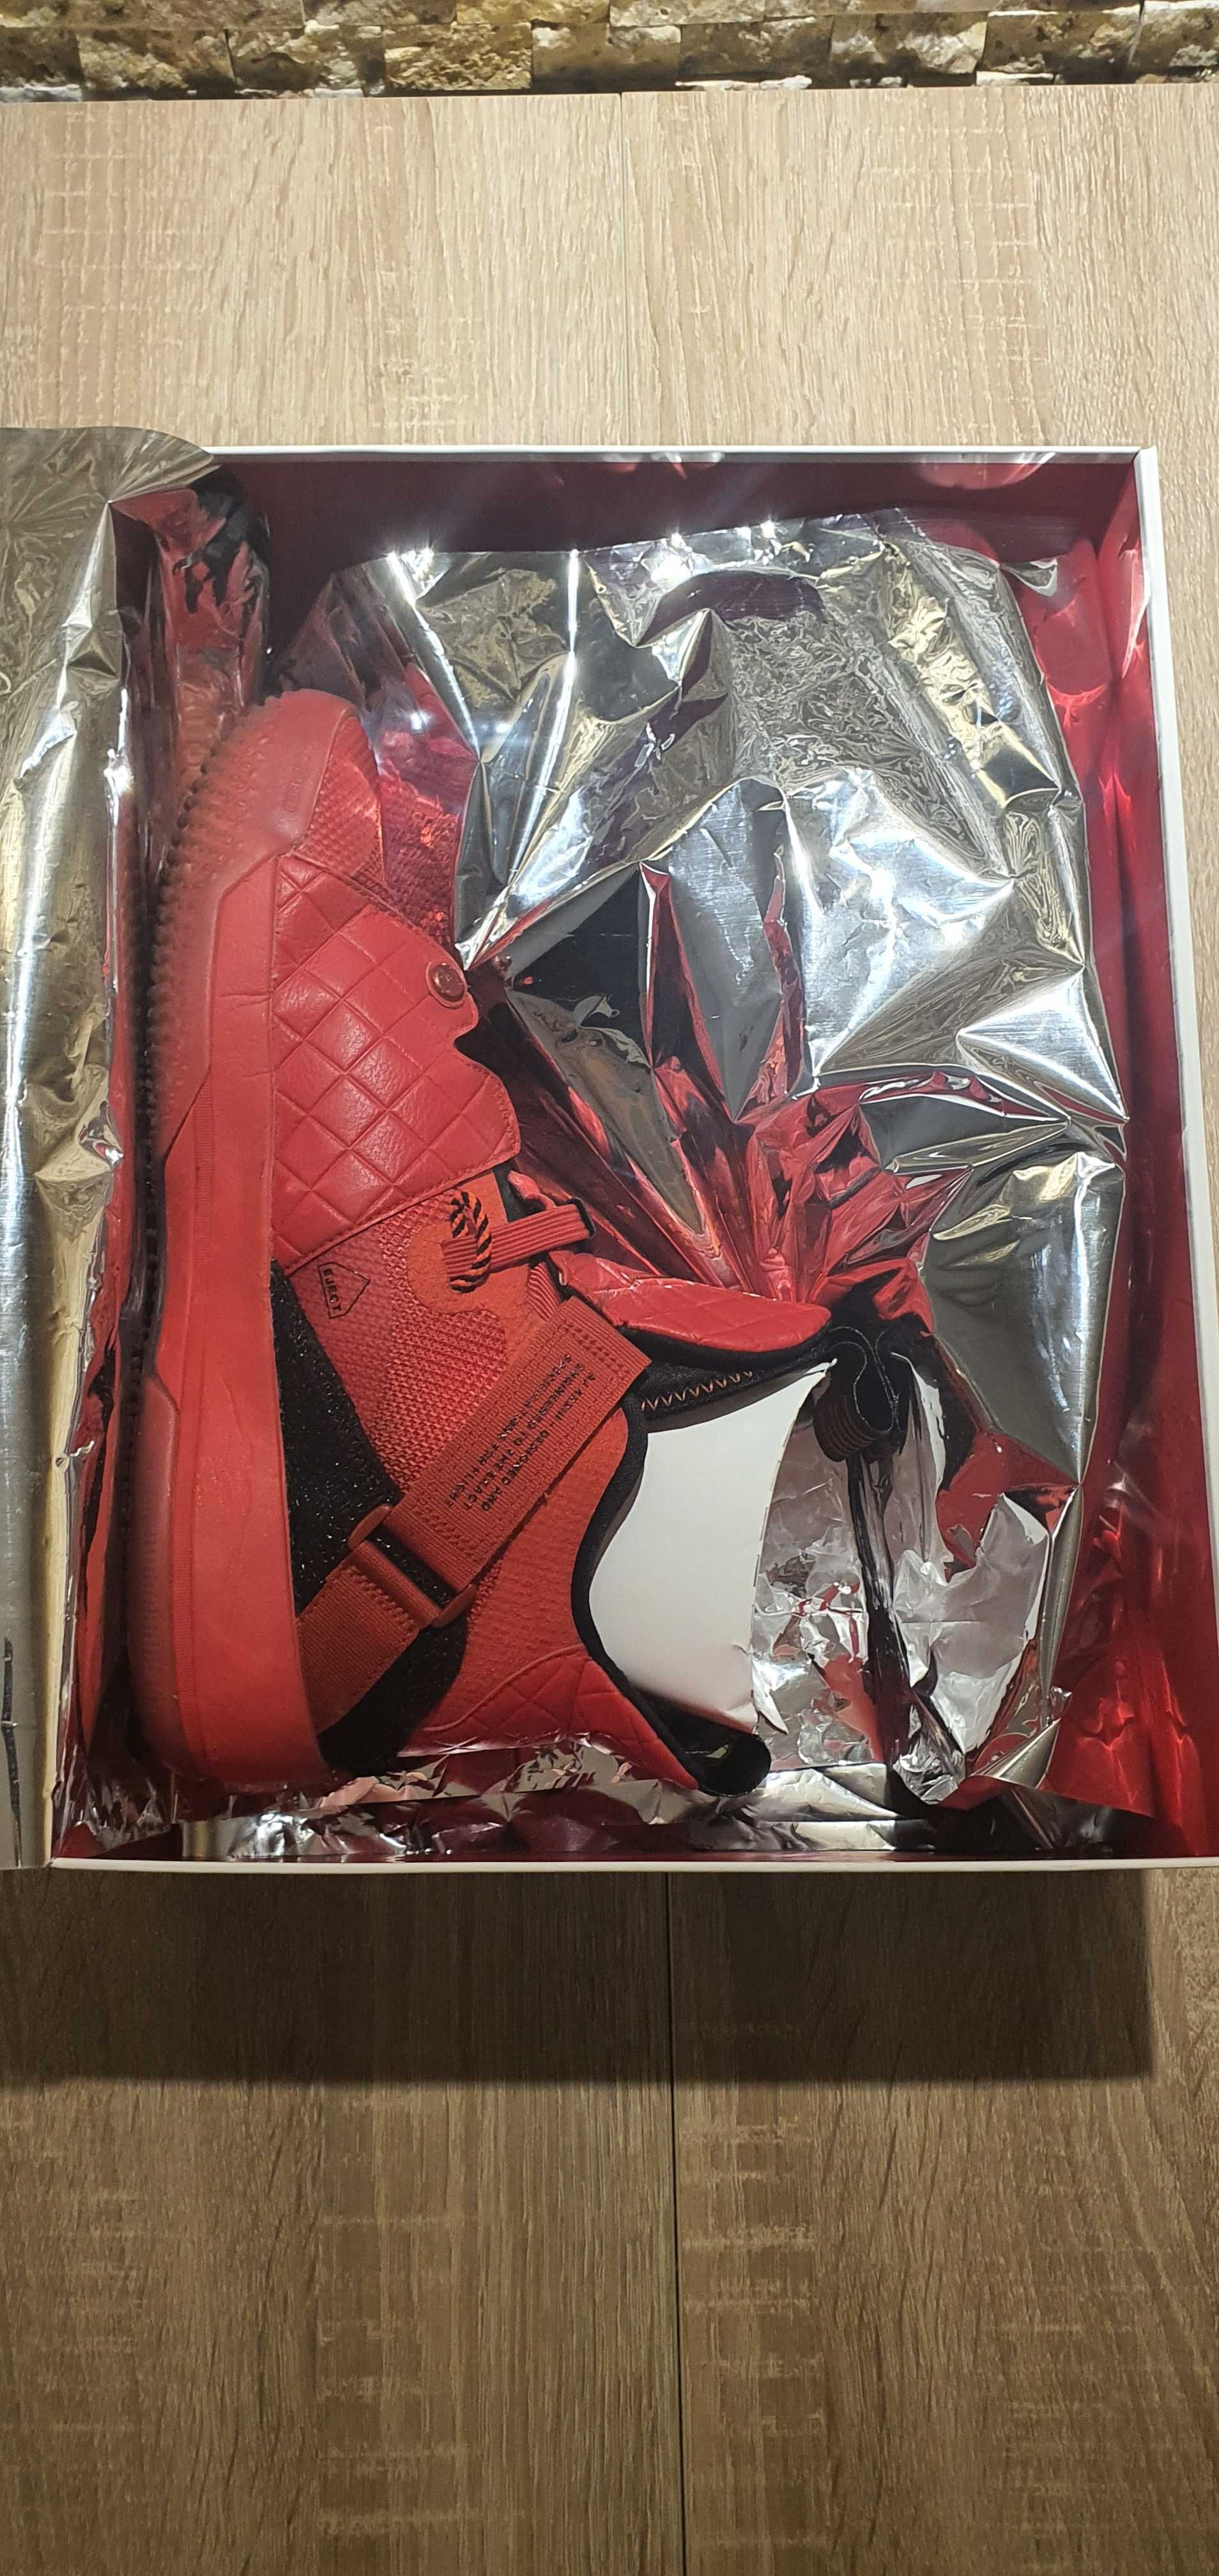 NIKE - Jordan 33 University Red обувки